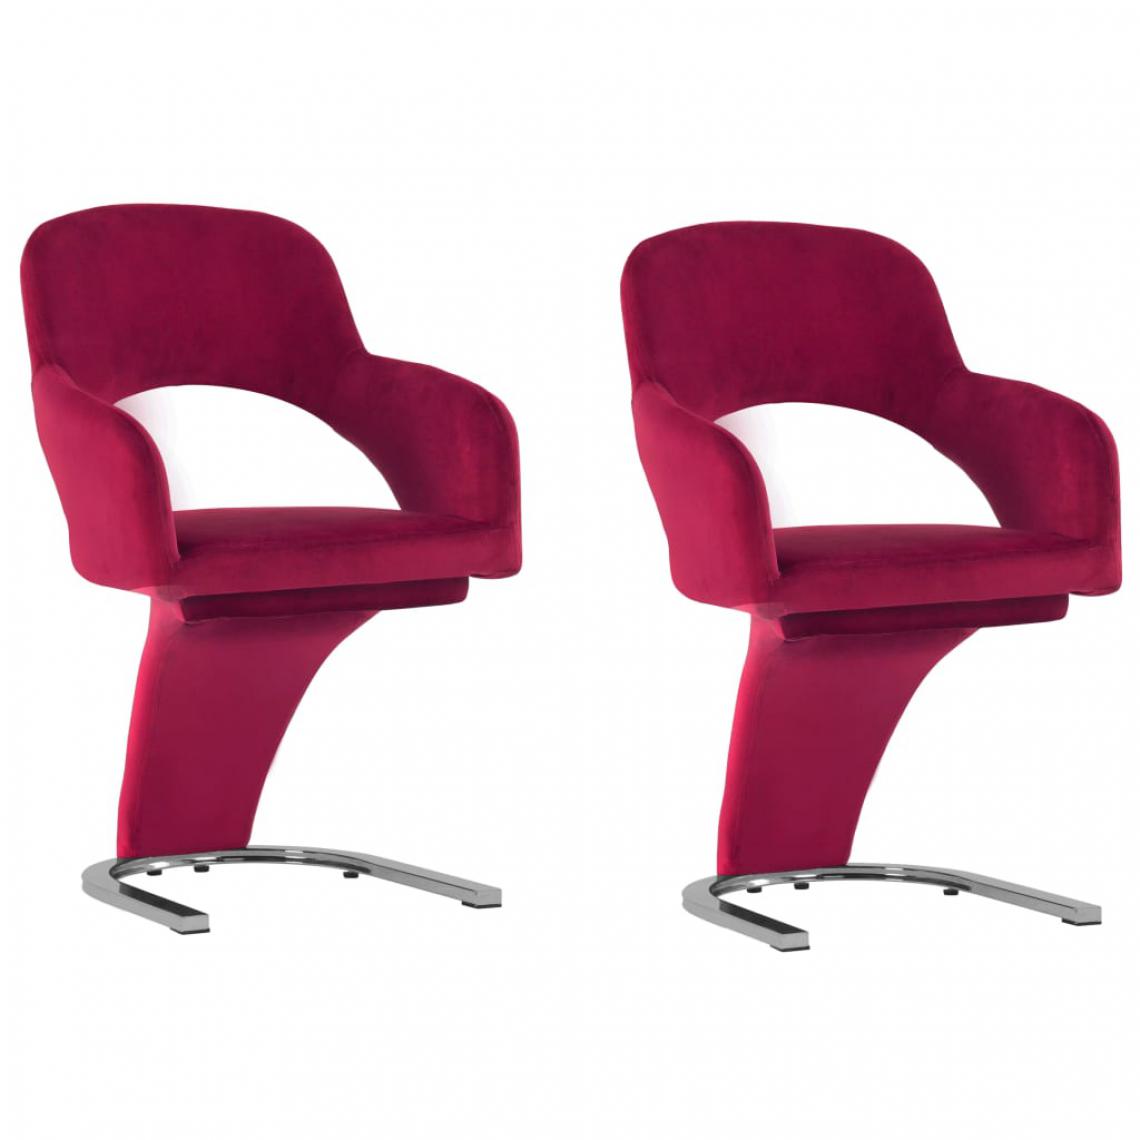 Icaverne - Joli Fauteuils et chaises selection Lima Chaises de salle à manger 2 pcs Rouge bordeaux Velours - Chaises